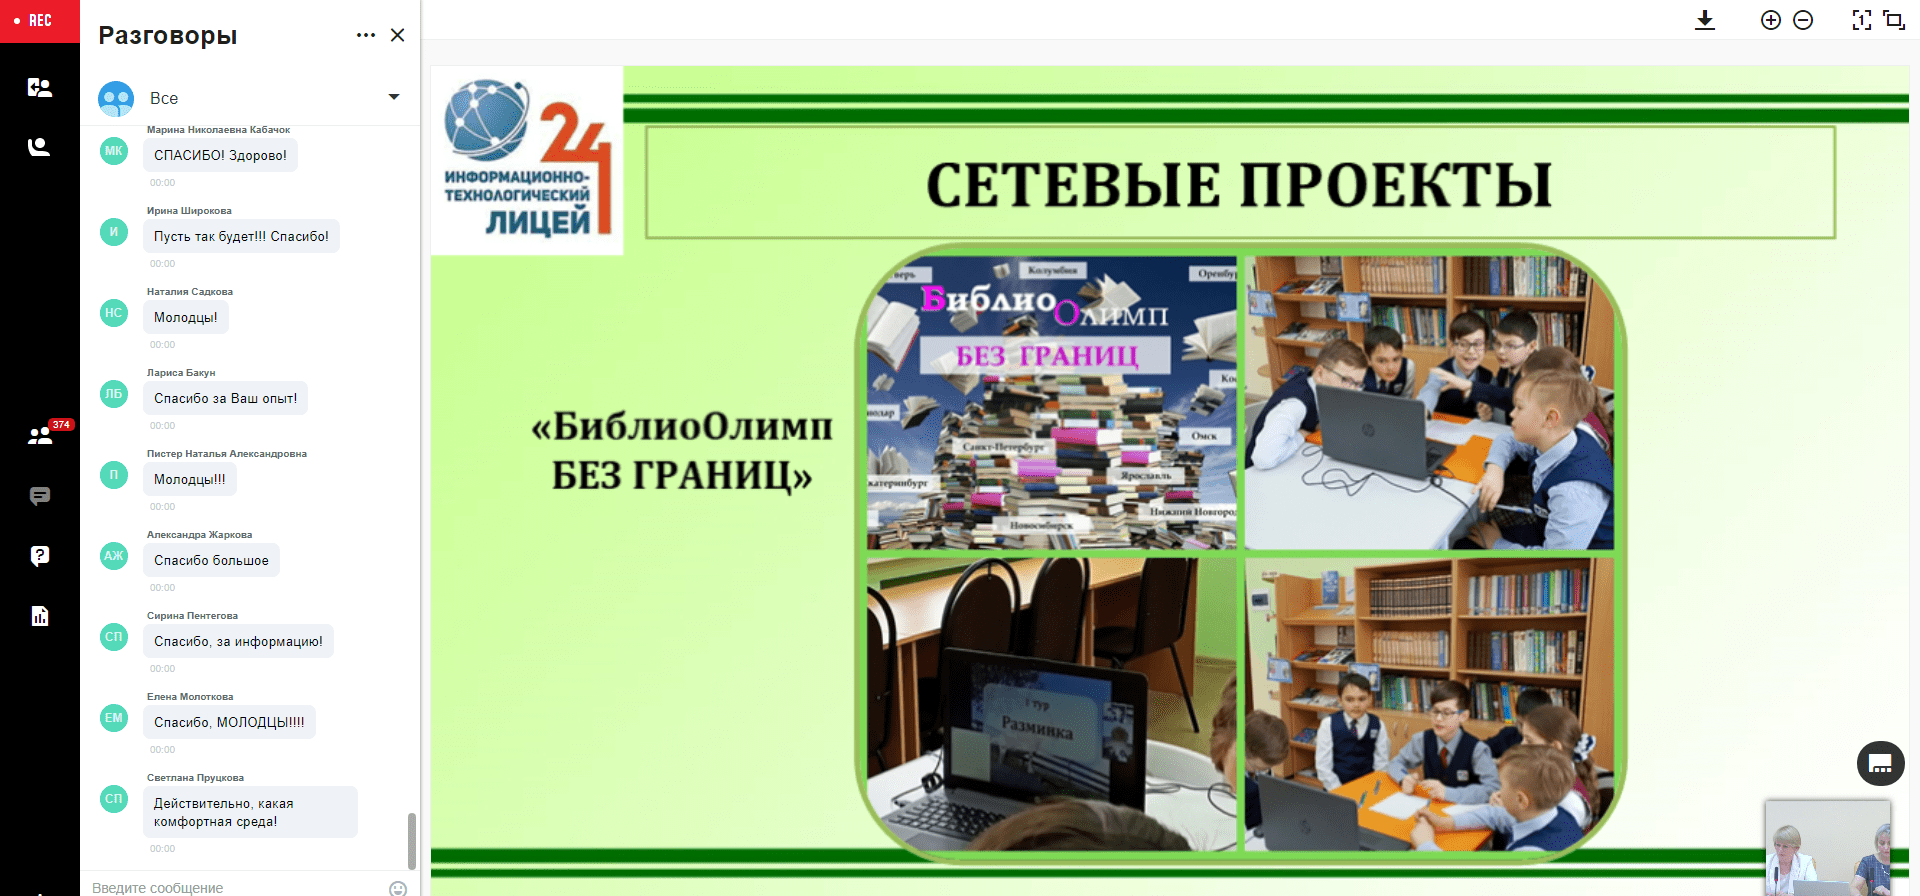 Опыт работы педагогов-библиотекарей Удмуртии вызвал интерес у севастопольских коллег